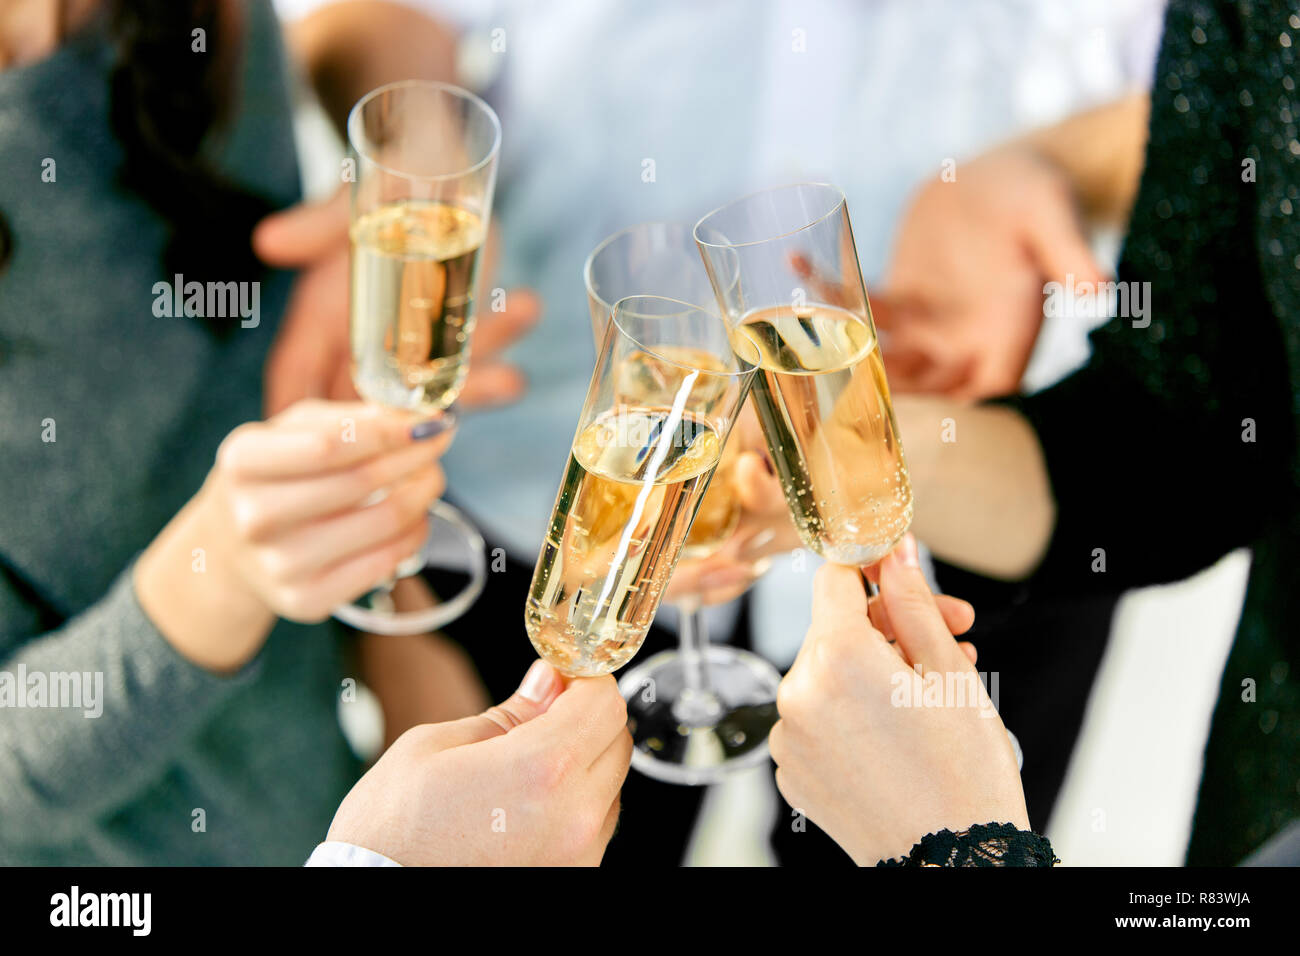 La célébration. Mains tenant les verres de champagne et vin faire un toast. Le parti, l'alcool, le mode de vie, l'amitié, maison de vacances, Noël, nouvel an, et concept de trinquer Banque D'Images